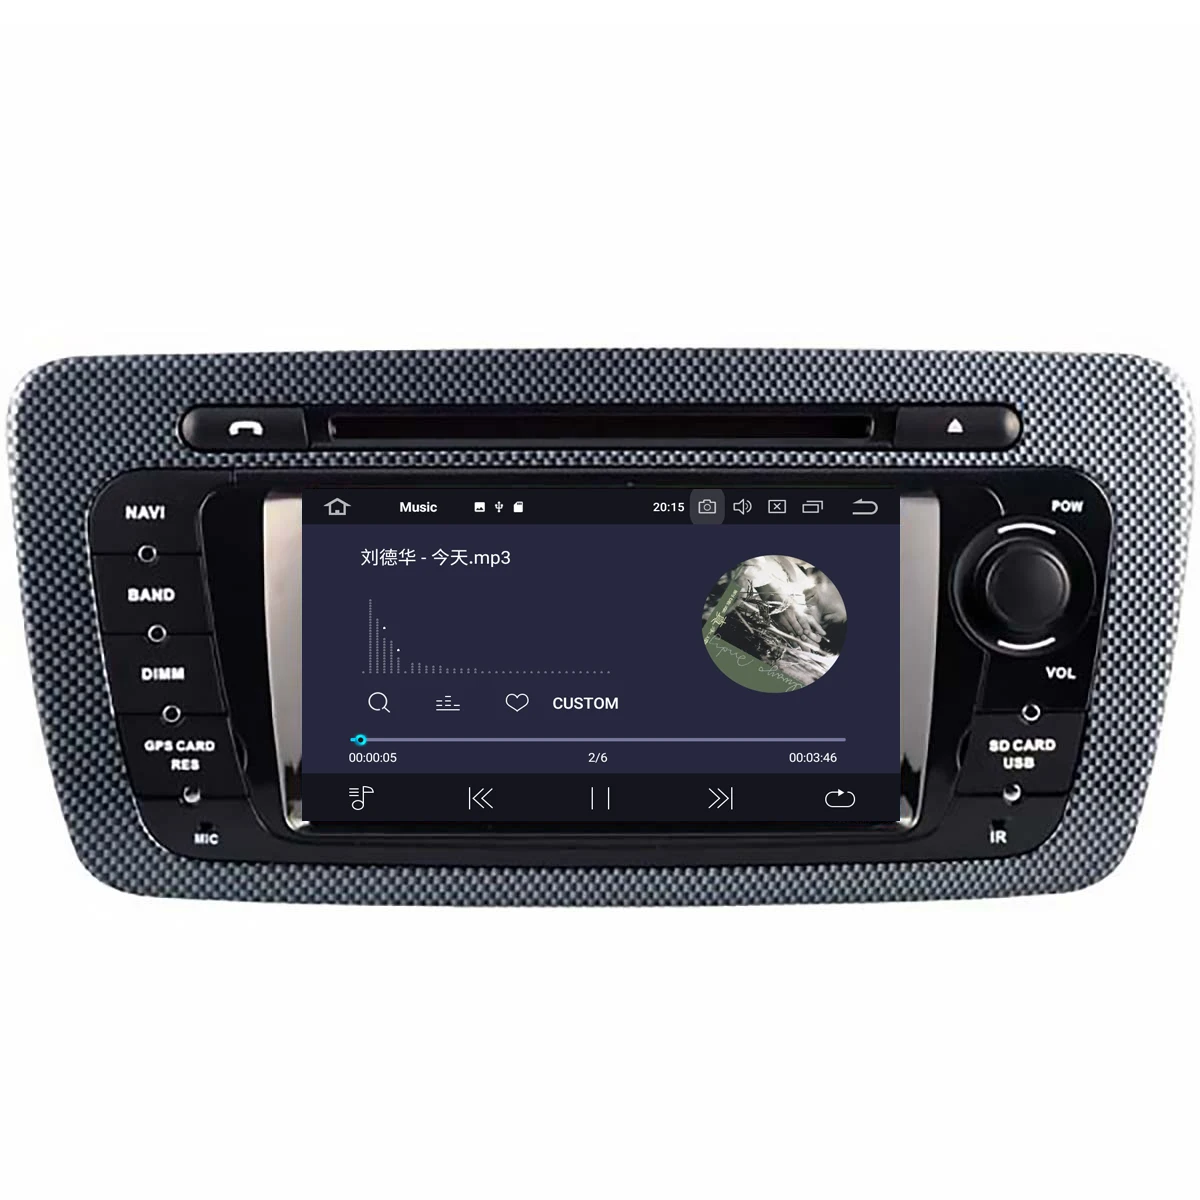 4G64G 6 core Android 9.0 Estéreo del Coche Inteligente Multimedia Reproductor de DVD de GPS para Seat Leon 2009-2013 de Audio de la radio grabadora jefe de la unidad de 1